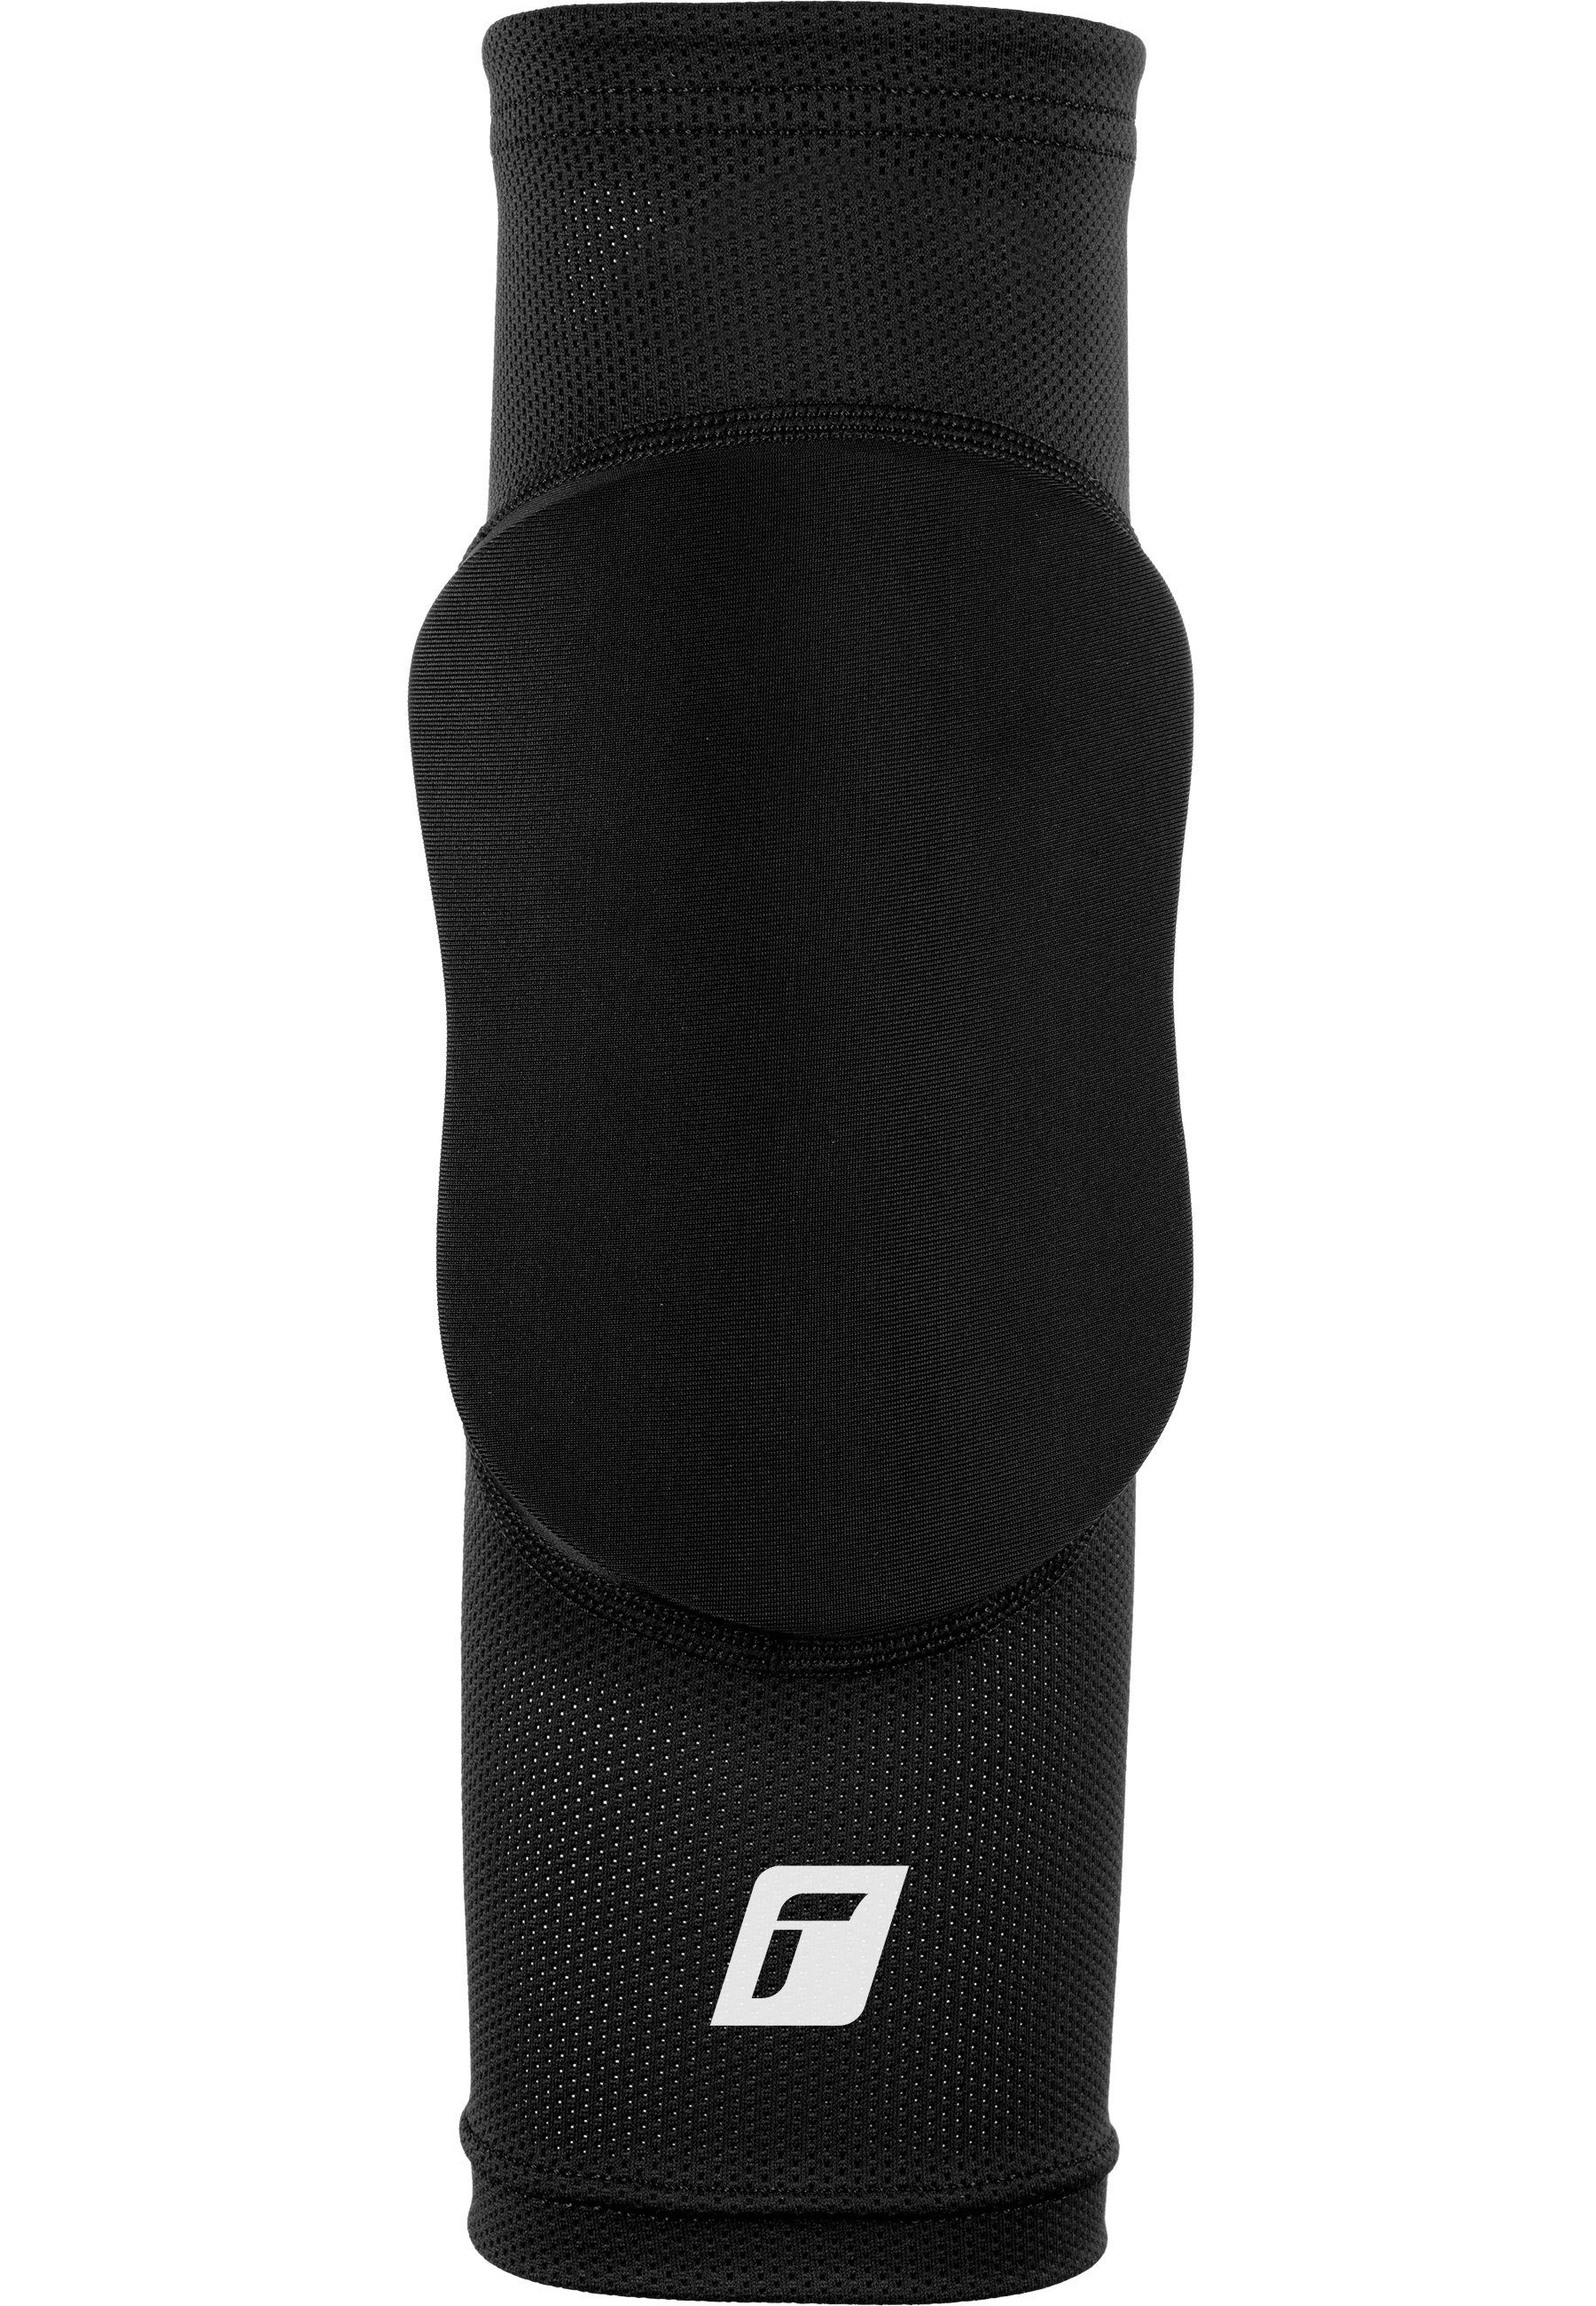 optimale Sleeve, für Reusch Knieprotektor Knee Protector Bewegungsfreiheit